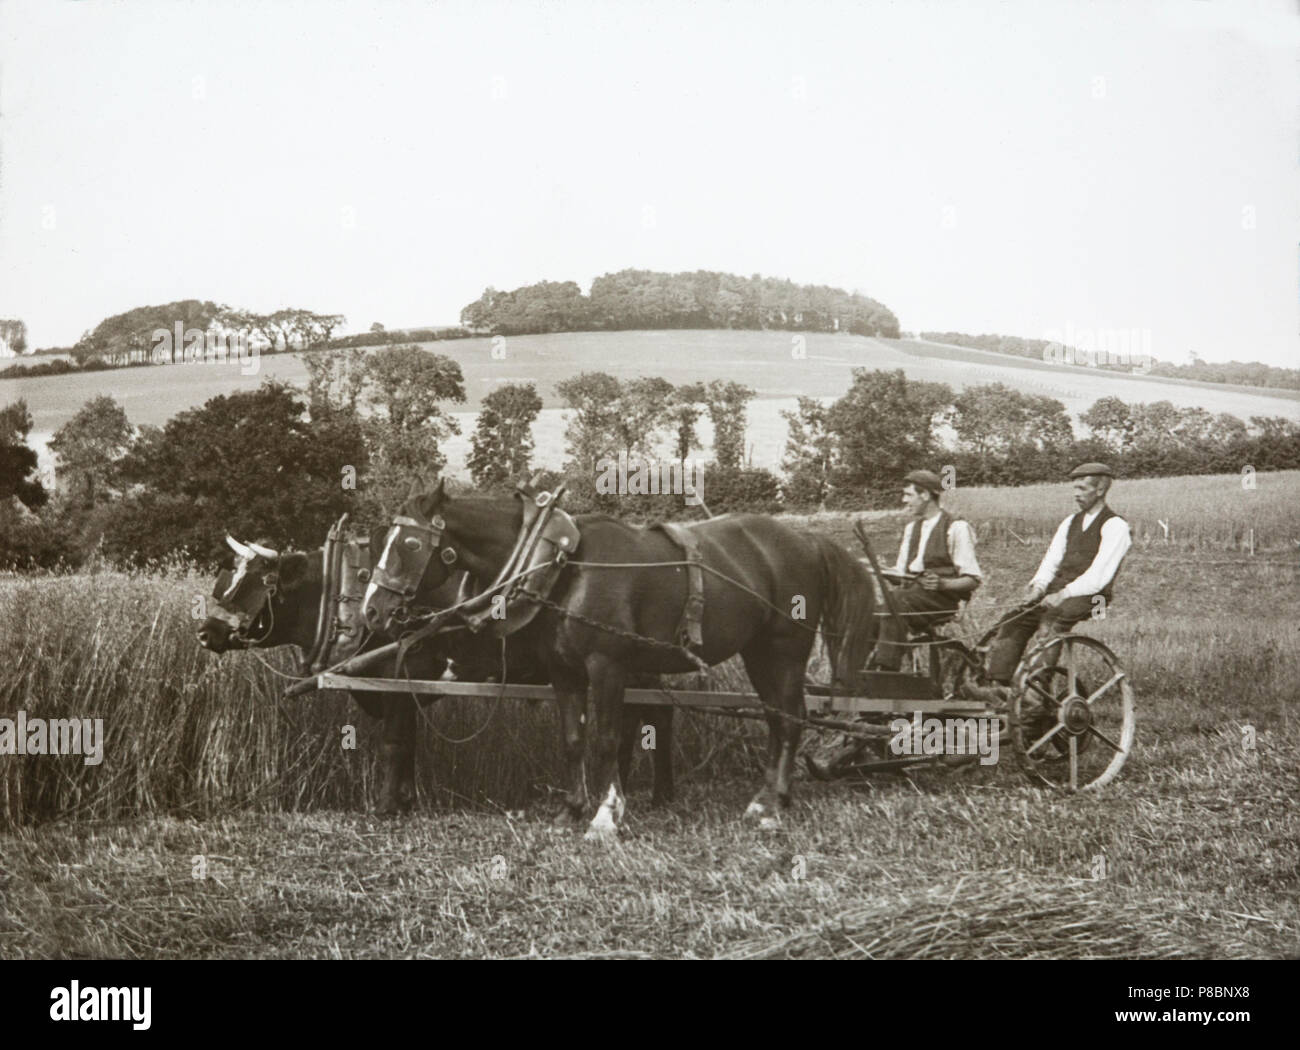 Un palazzo di fine ottocento fotografia che mostra due uomini in un carrello trainato da un cavallo e un toro, circondato da campi, in Inghilterra. Mostra vita agricola in quel periodo. Foto Stock